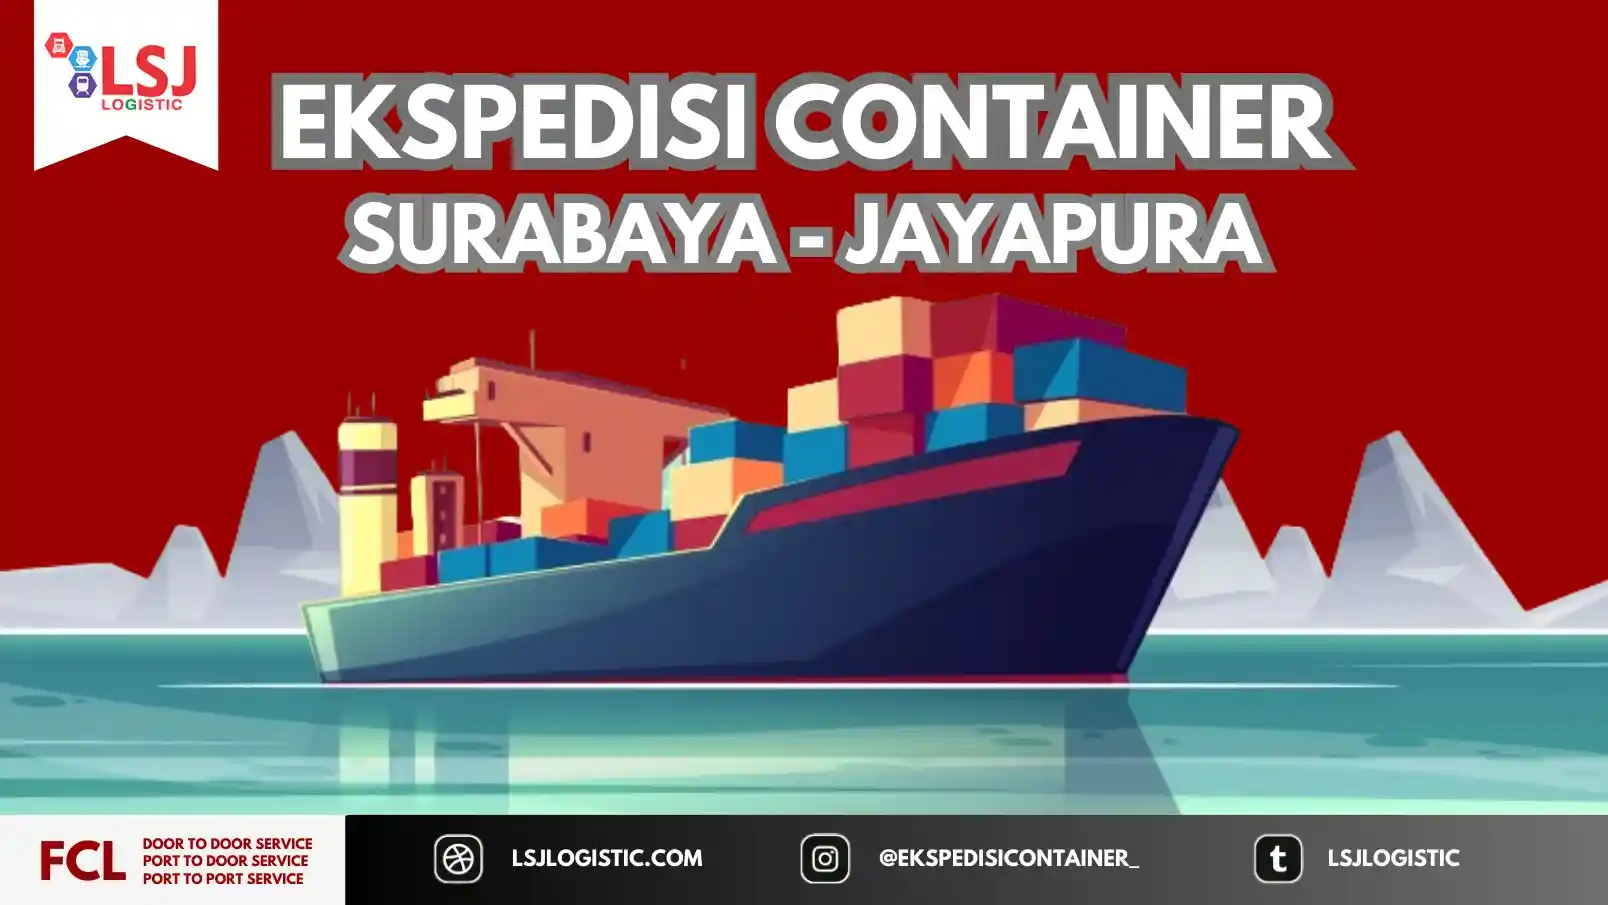 Harga Pengiriman Container Surabaya Jayapura